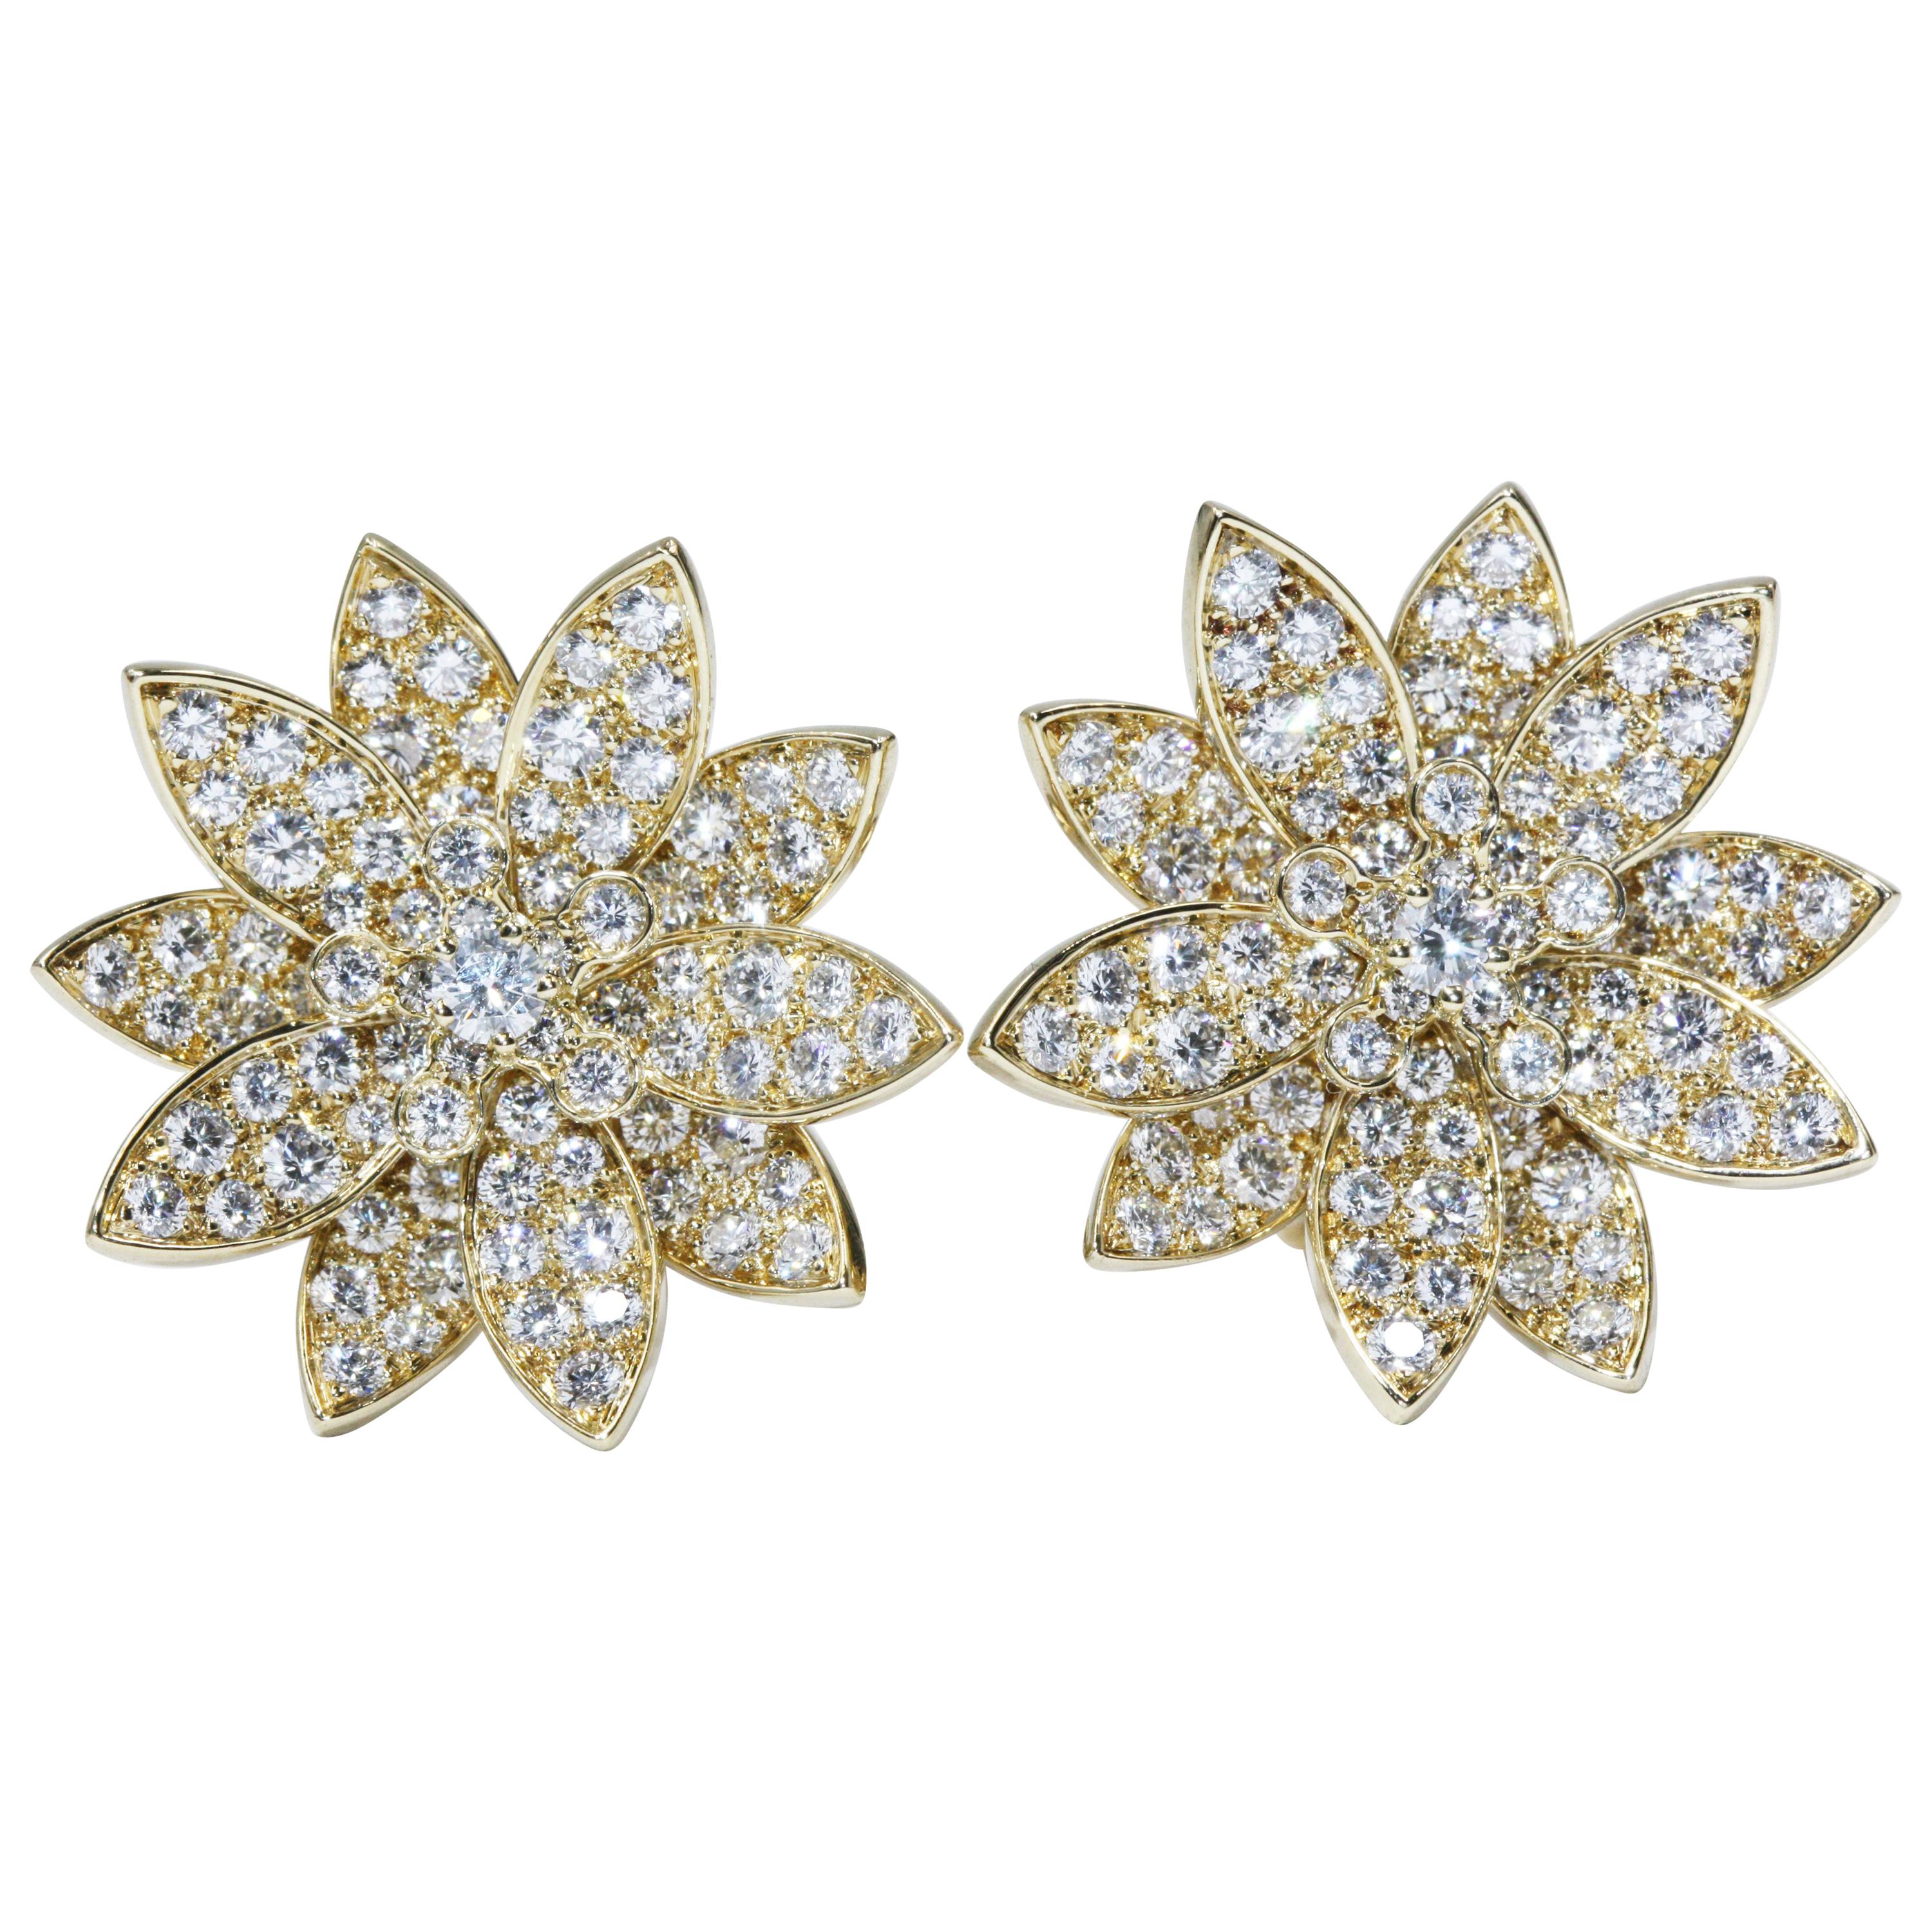 Share 106+ lotus earrings van cleef latest